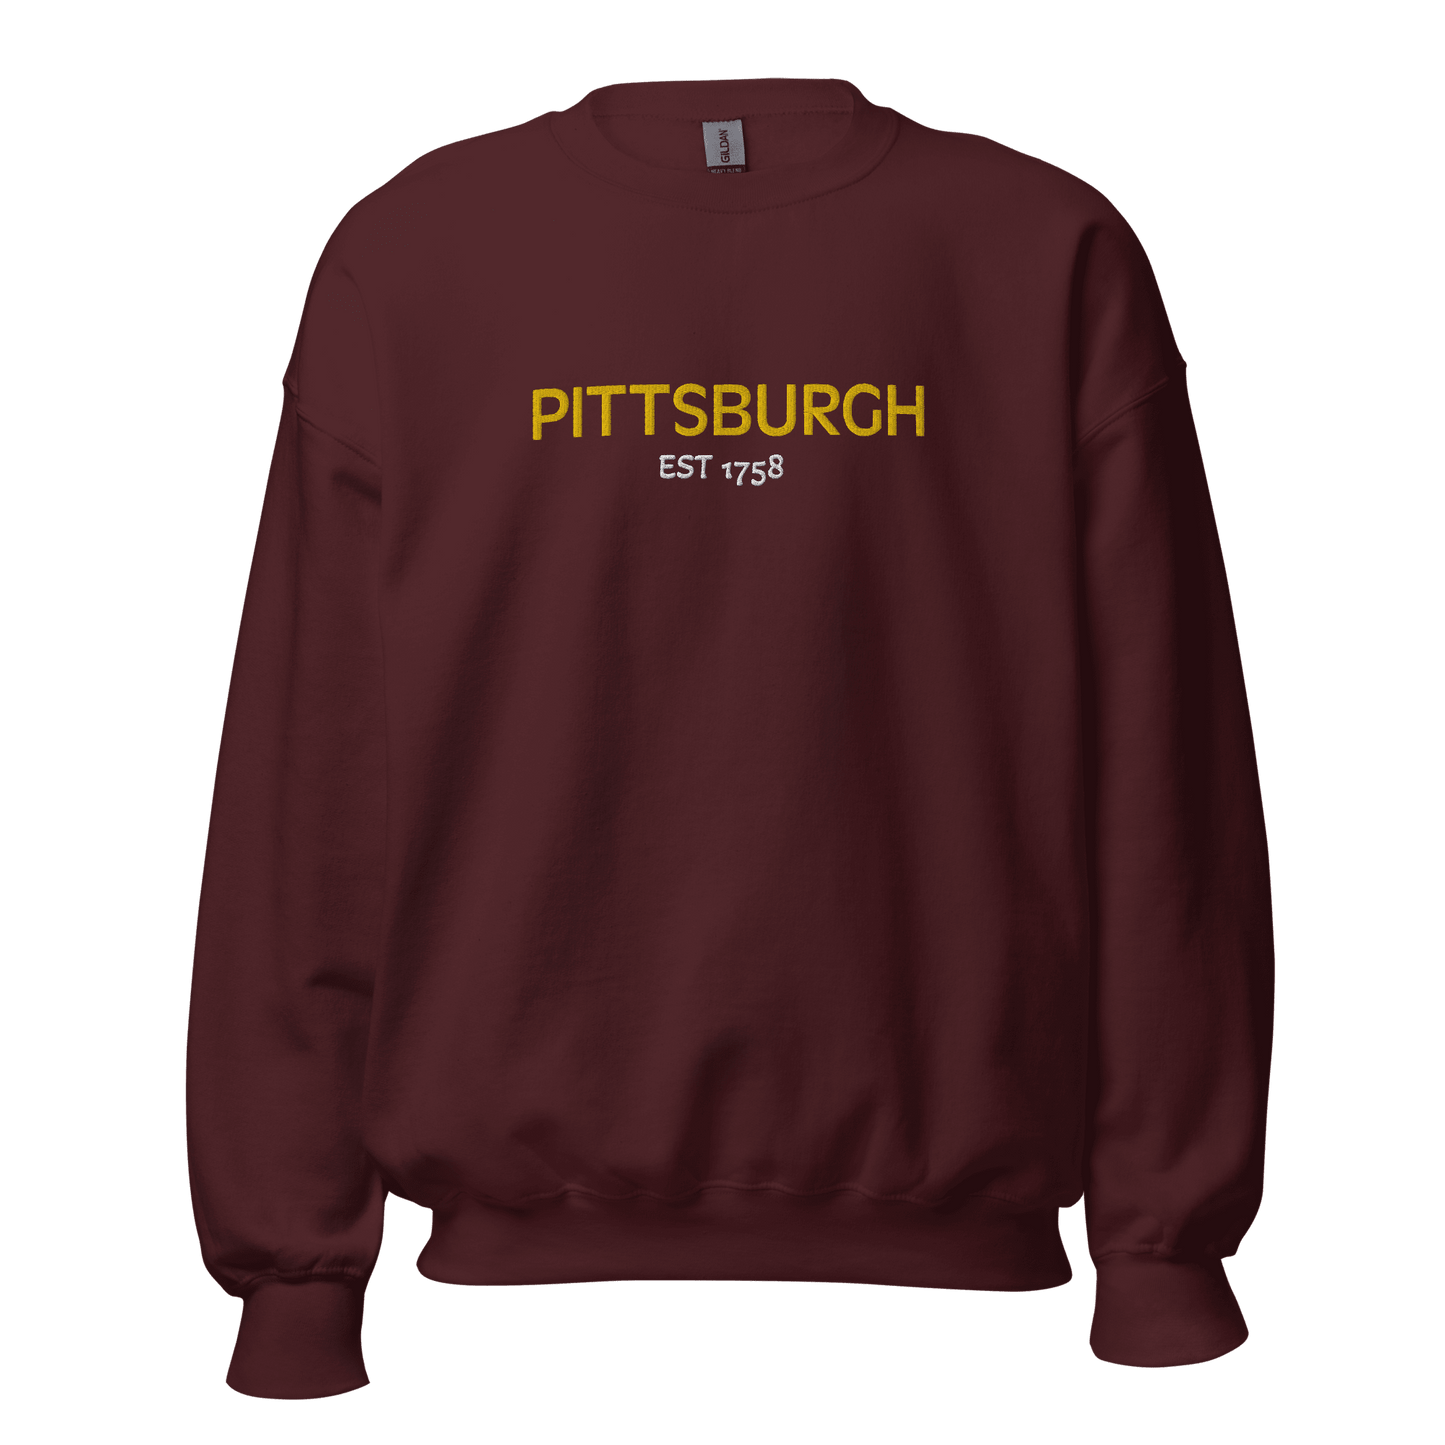 Embroidered Pittsburgh EST 1758 Sweatshirt Yinzergear Maroon S 